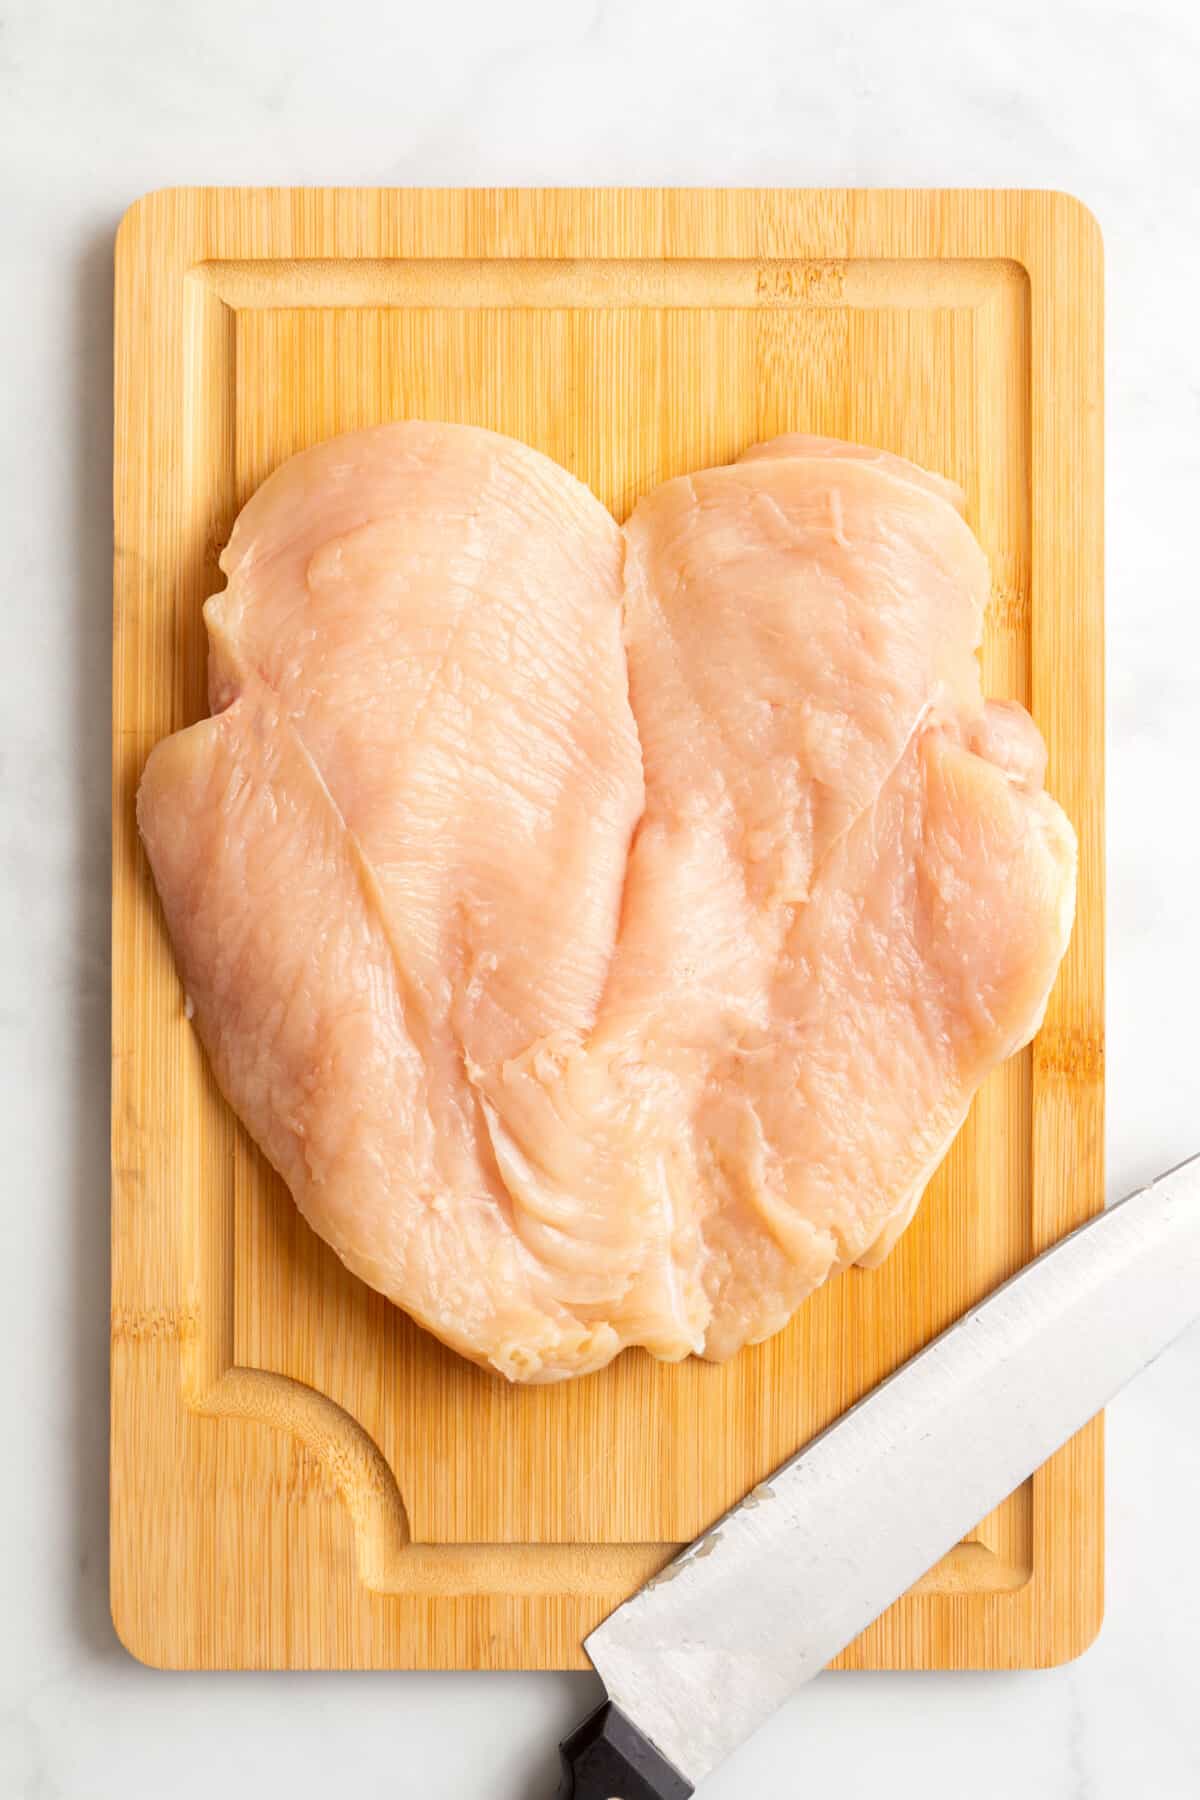 A raw butterflied chicken breast on a wooden cutting board.